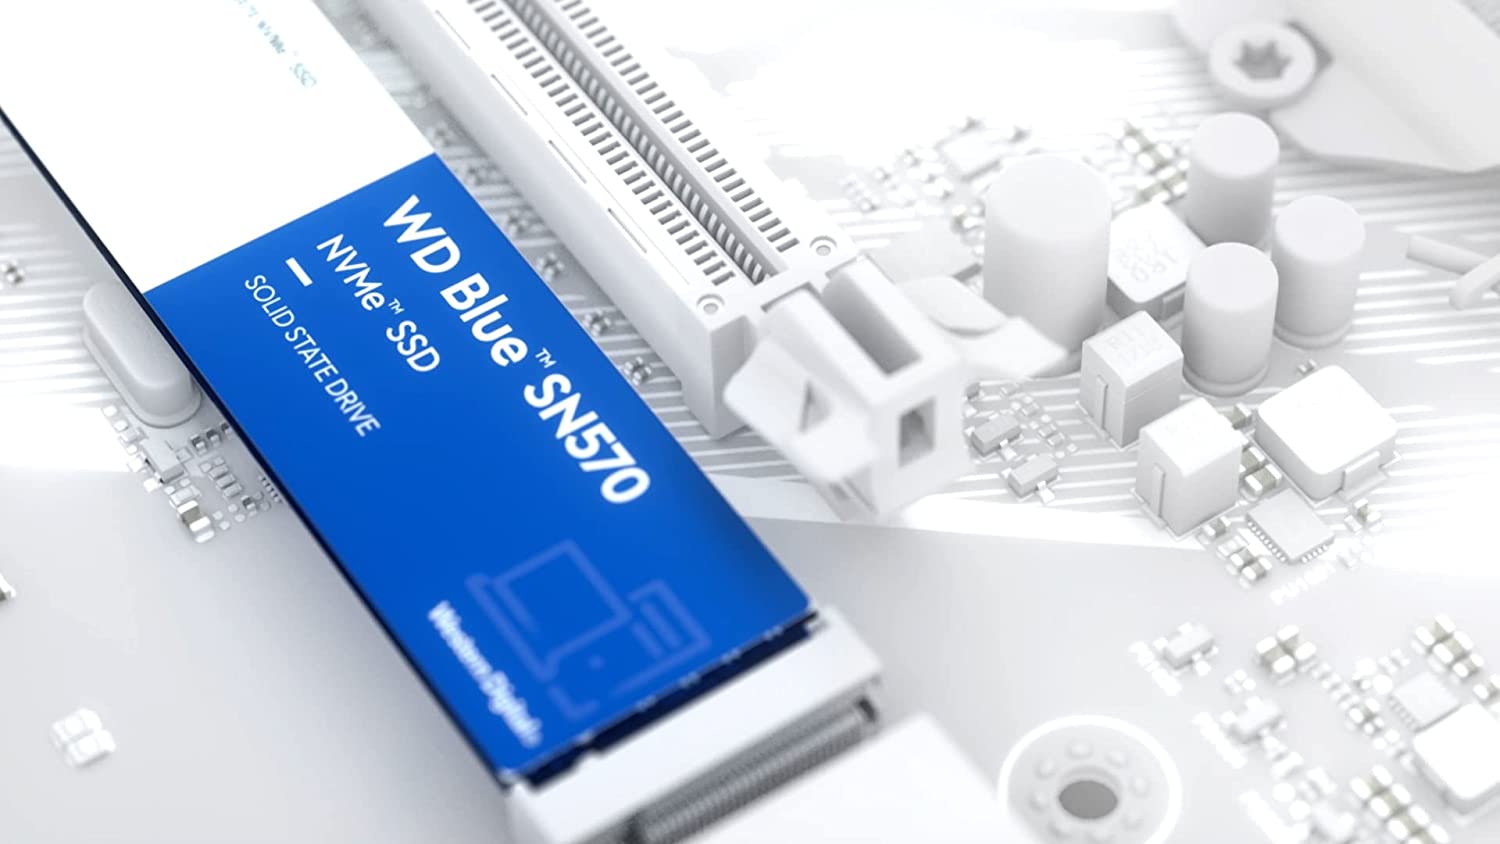 Disque SSD interne Western Digital 500 Go WD Blue SN570 NVMe - Gen3 x4 PCIe 8 Go/s, M.2 2280, jusqu'à 3 500 Mo/s - WDS500G3B0C